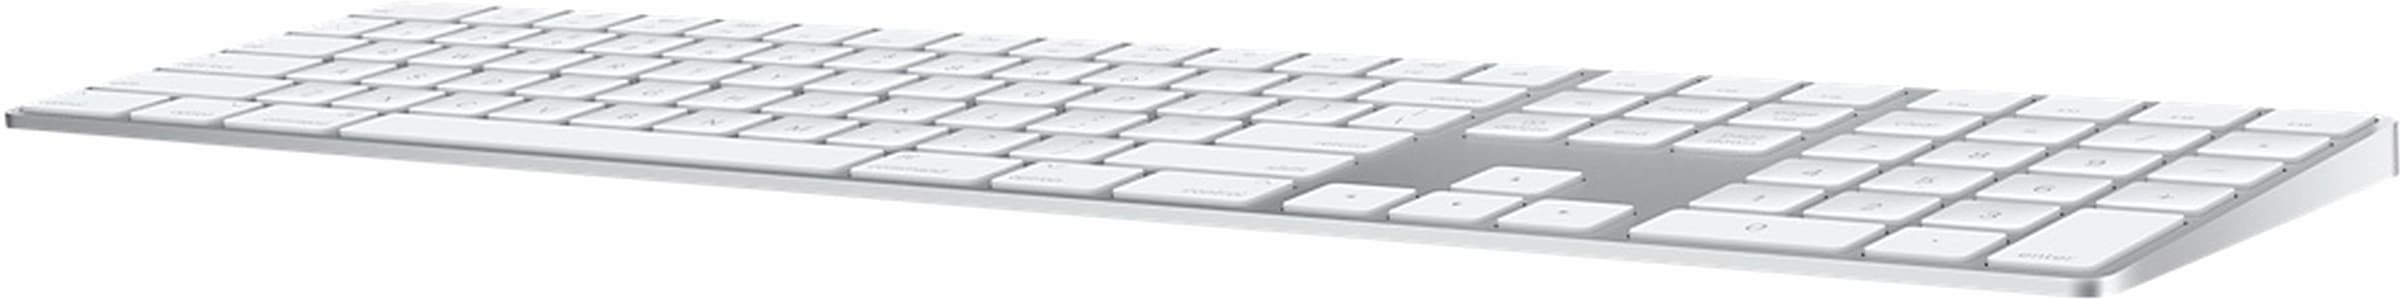 Apple Apple-Tastatur »Magic Keyboard MQ052D/A«, (Ziffernblock)